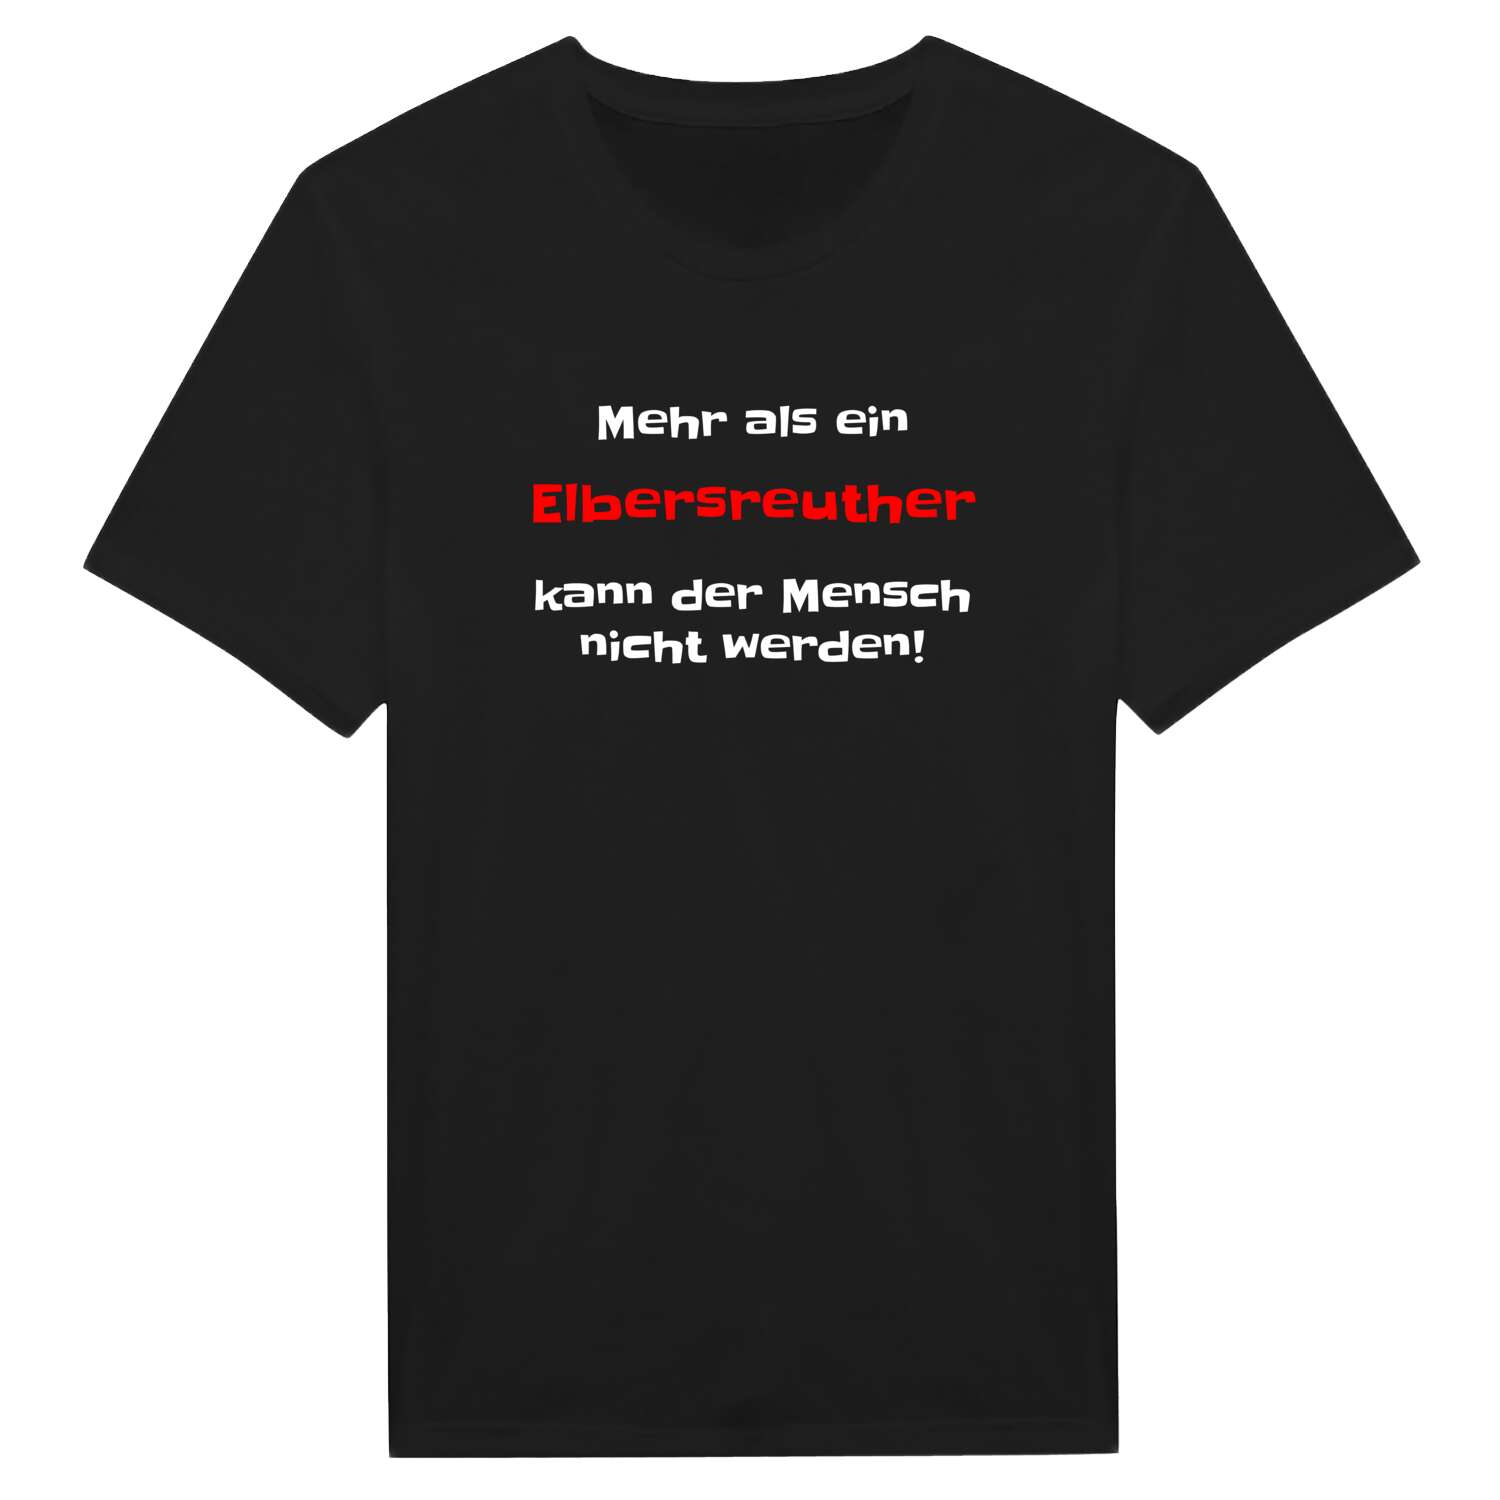 Elbersreuth T-Shirt »Mehr als ein«